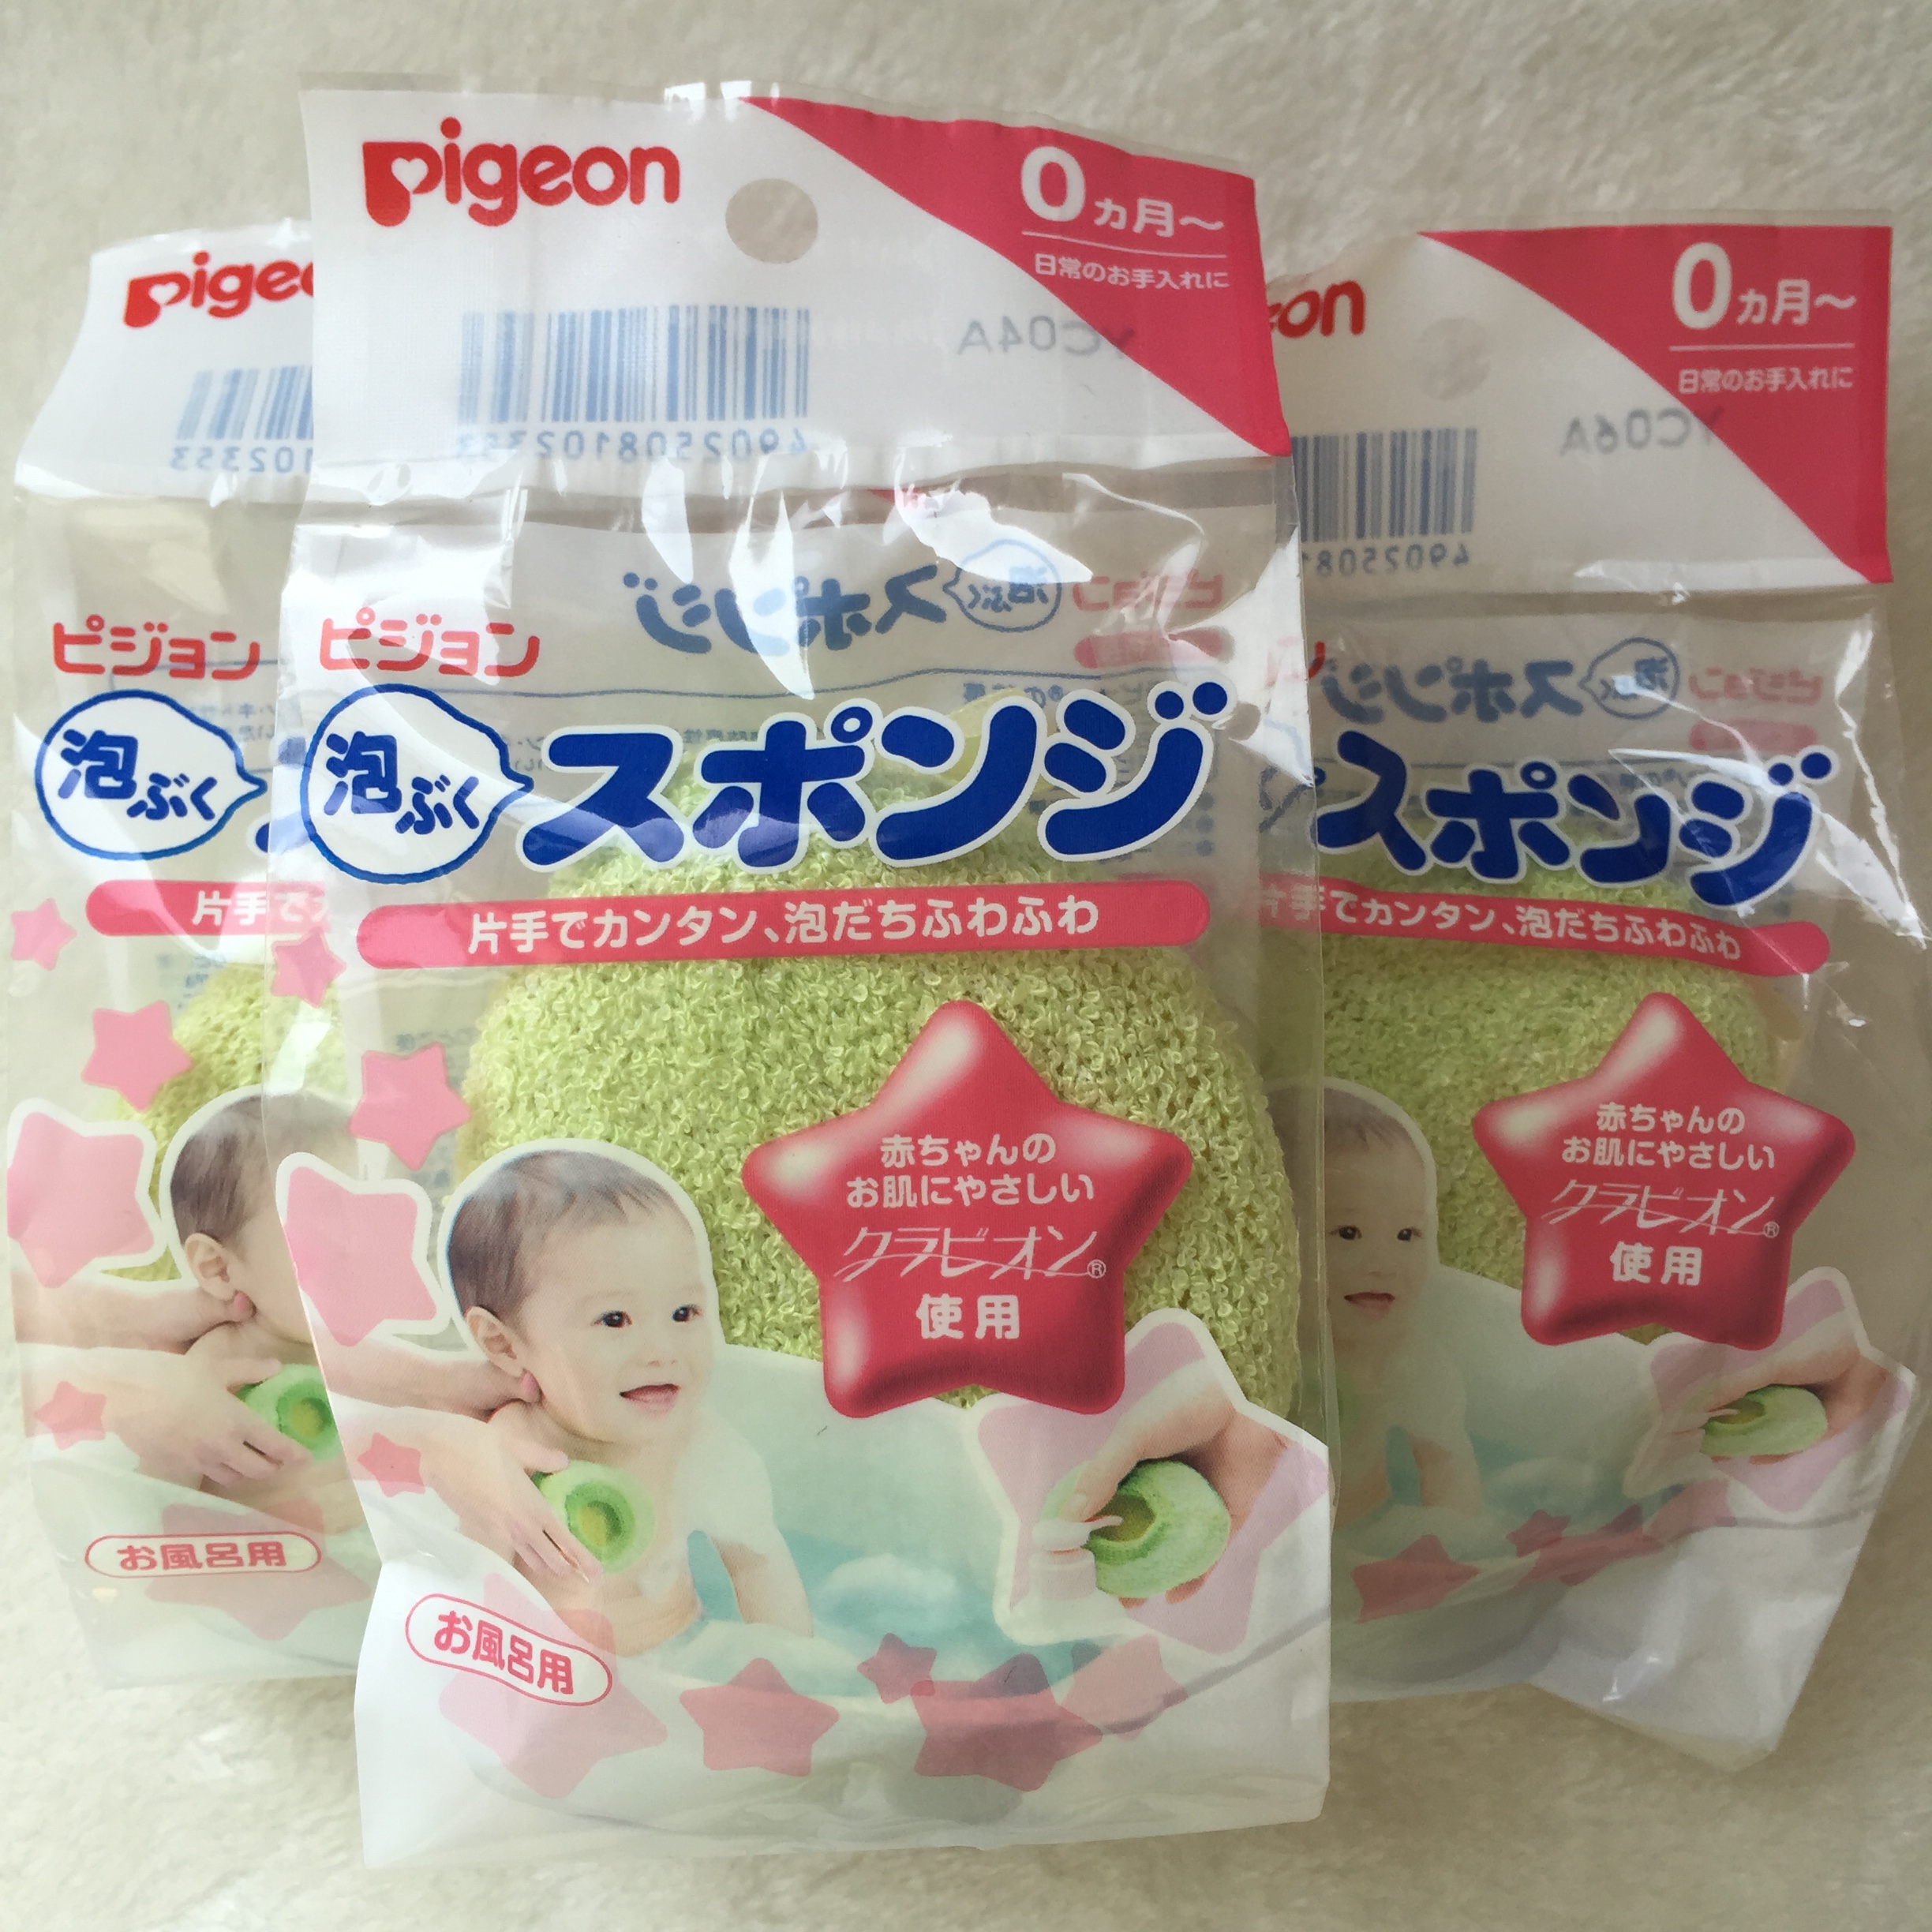 现货日本贝亲pigeon婴儿沐浴海绵 宝宝 儿童洗澡棉搓澡巾日本制圆